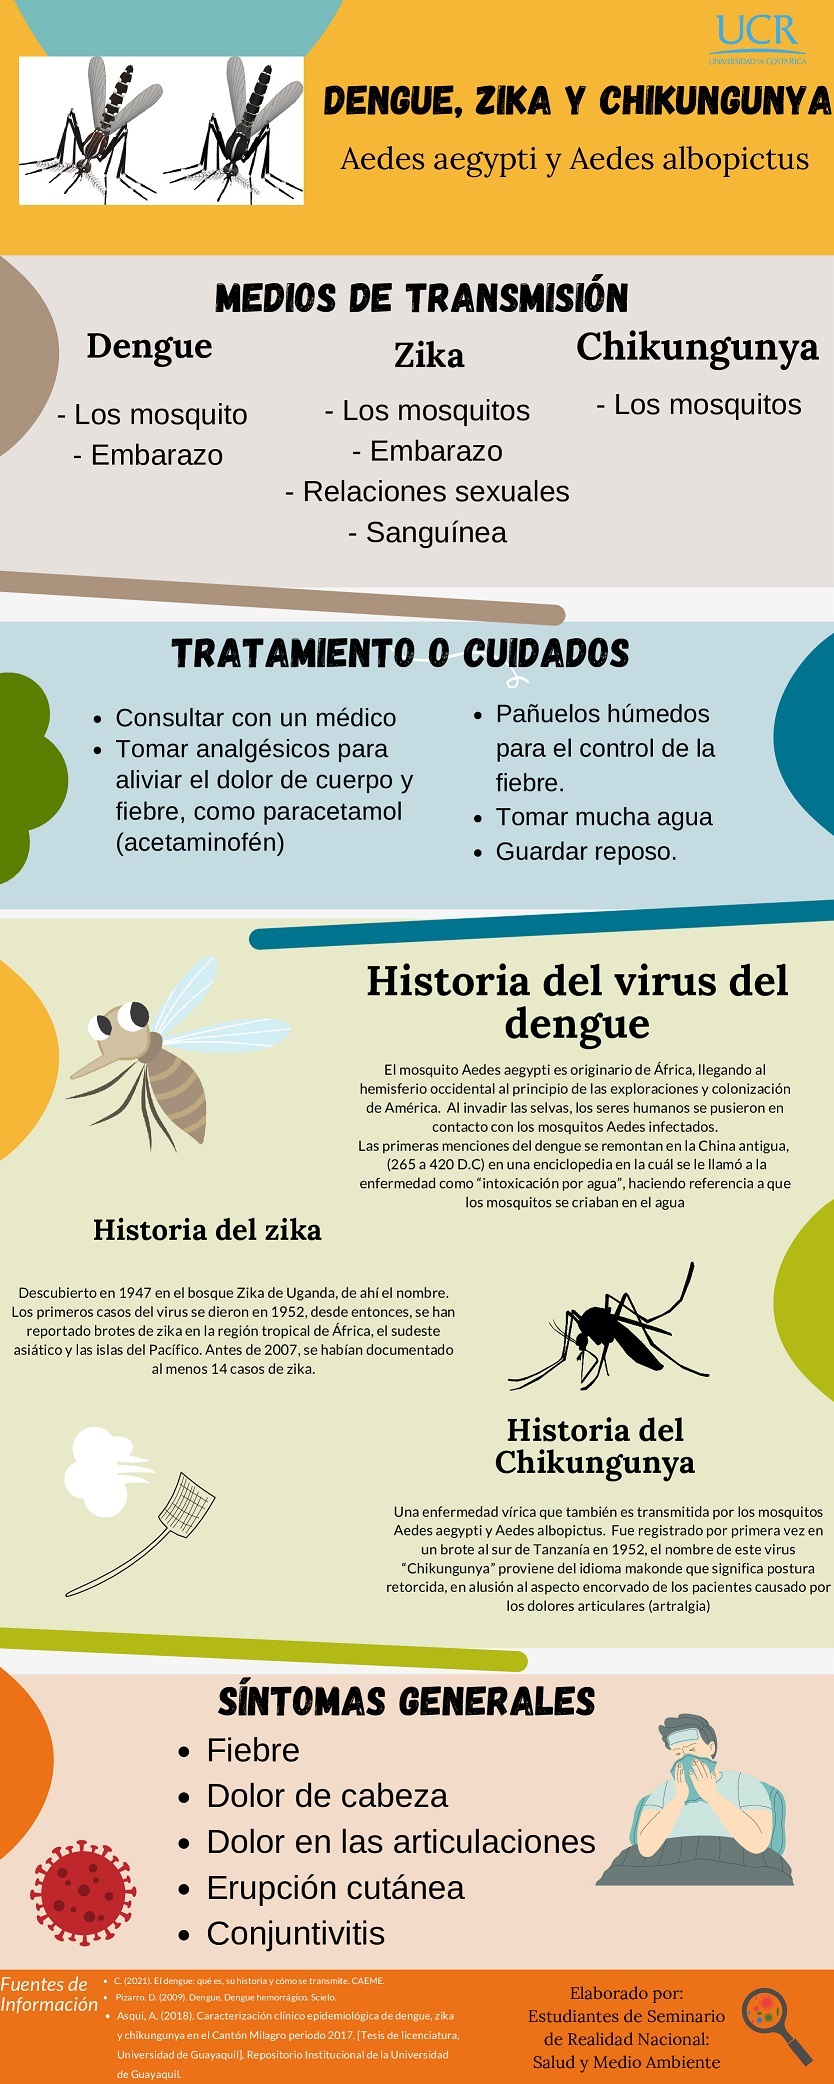 Infografía sobre el Dengue